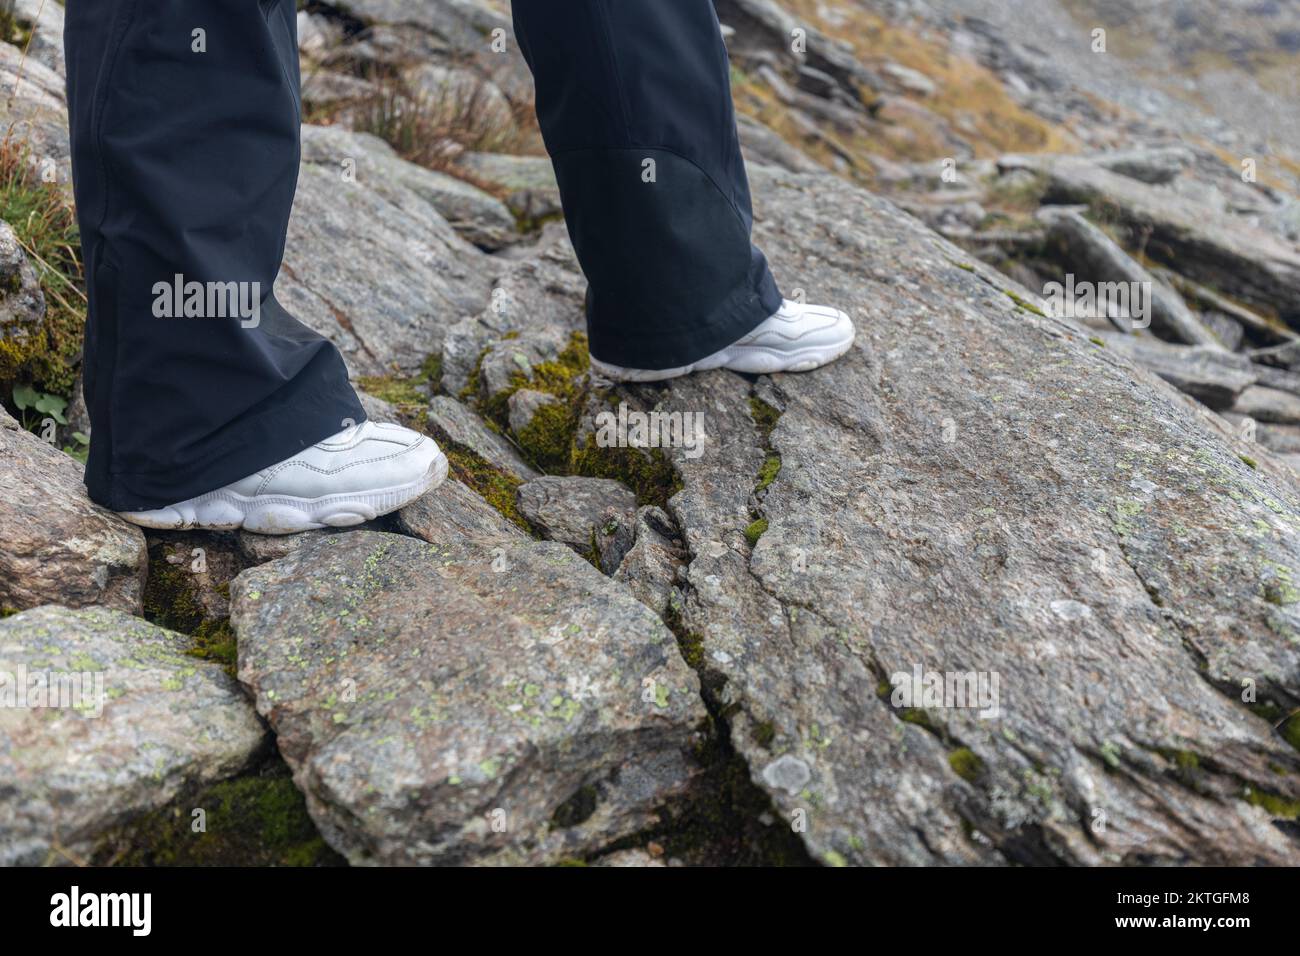 Le gambe di una donna in sneakers bianche passano attraverso un sentiero roccioso di montagna, le alpi austriache. Foto di alta qualità Foto Stock